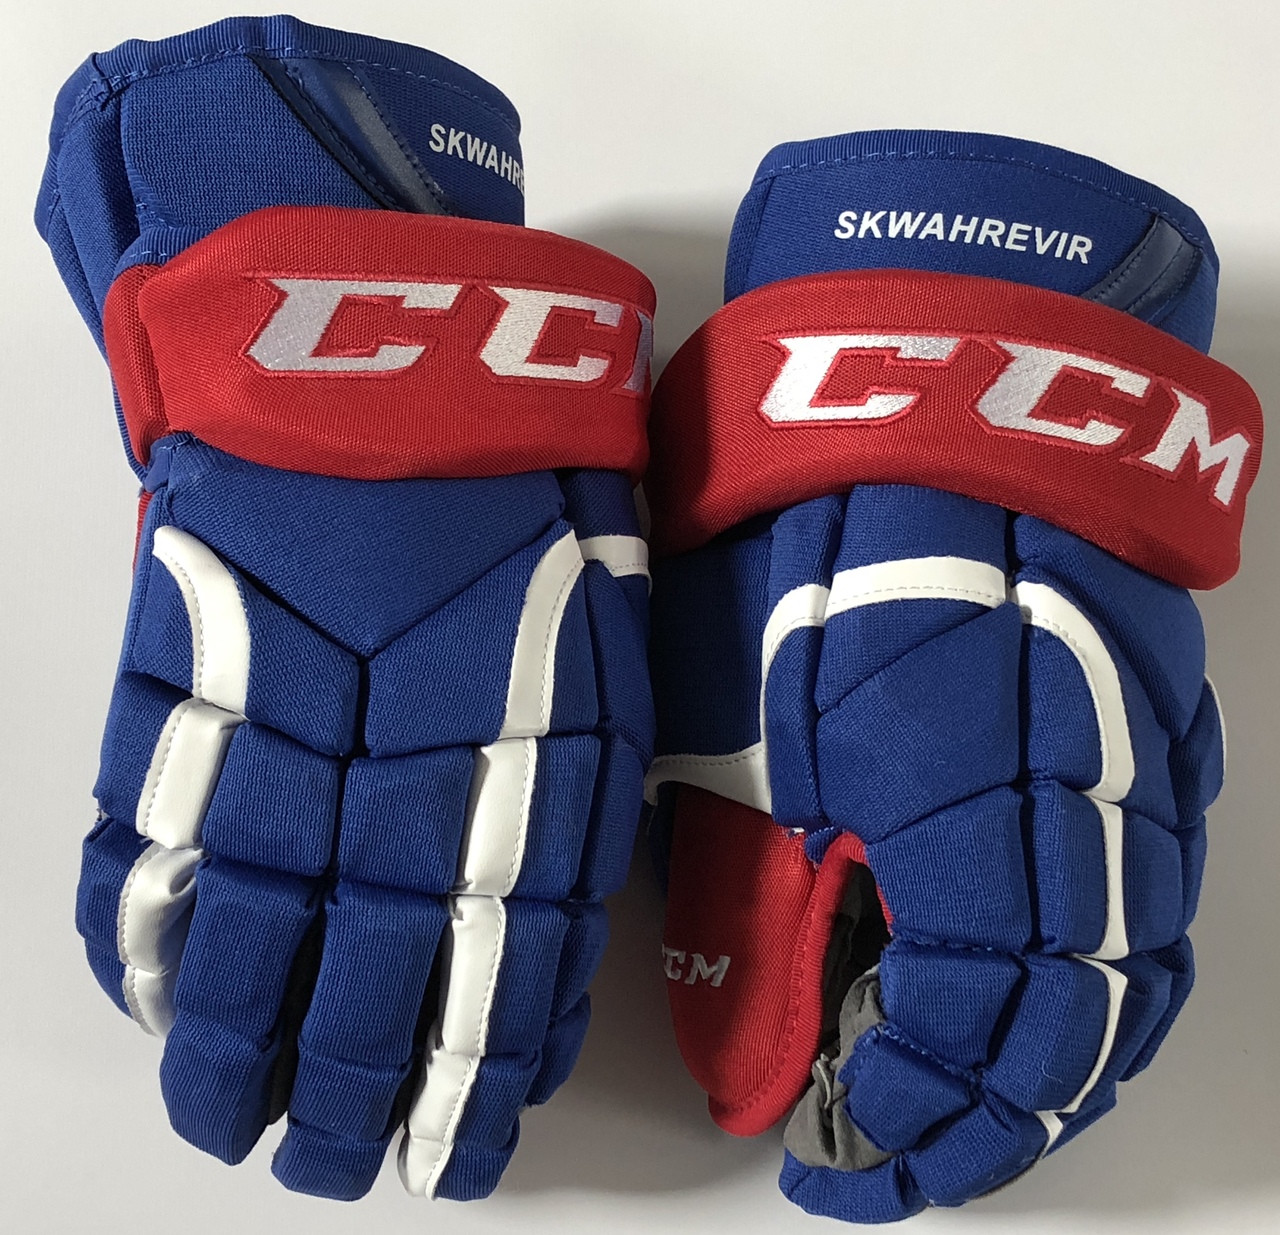 Краги 12. Ccm hg12 перчатки. Краги ccm Pro stock hg12 Gloves. Ccm 30k краги. Краги ccm Pro 14.